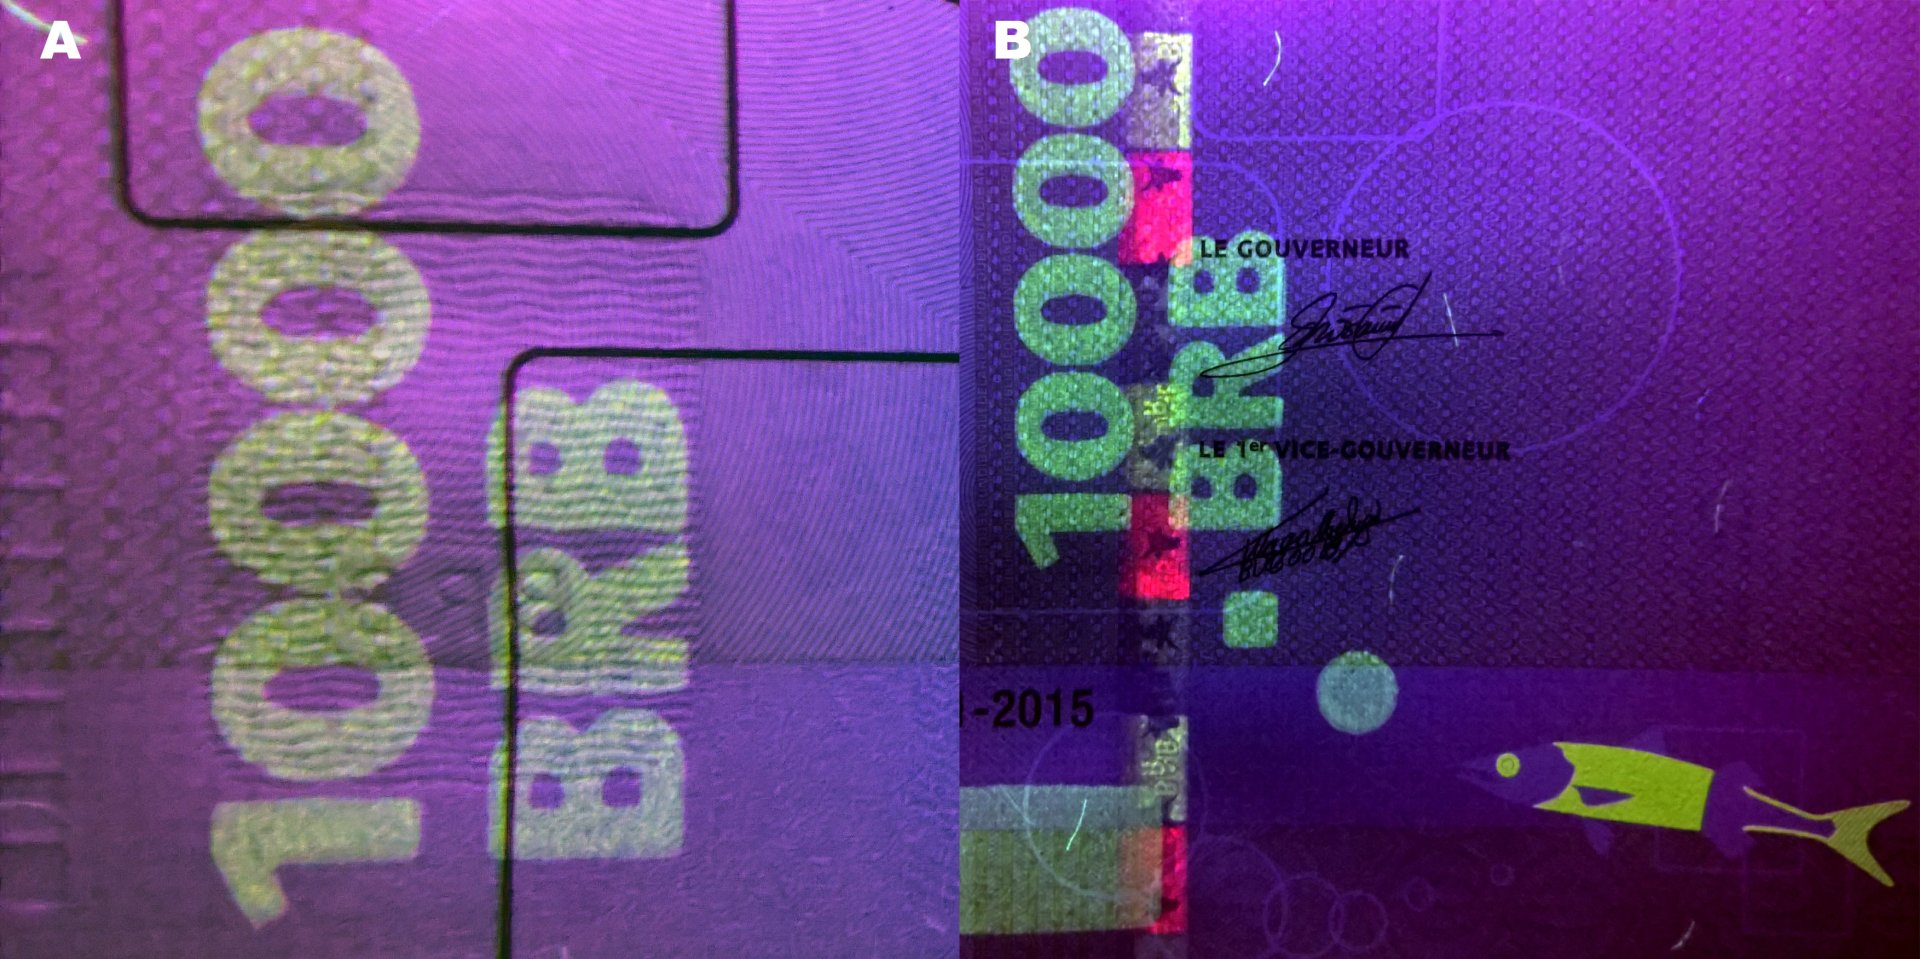 8 A) UV pole v levém panelu reverzu B) UV pole podél levého okraje pravého panelu, bezpečnostní proužek a kolorizovaná soutisková značka.